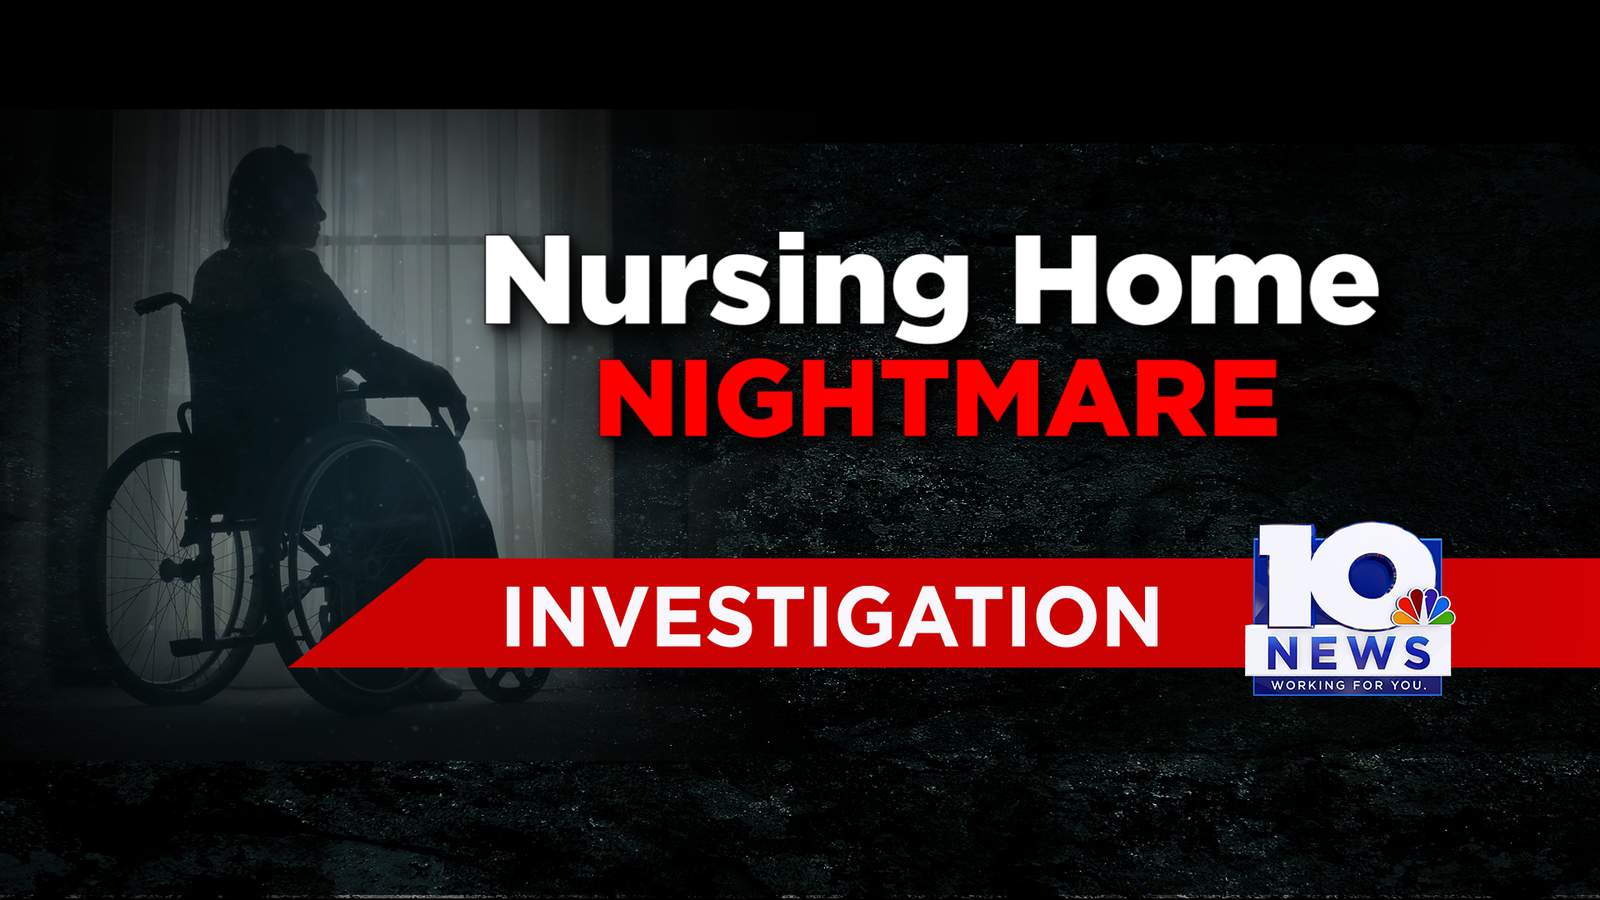 A local family shares their nursing home nightmare